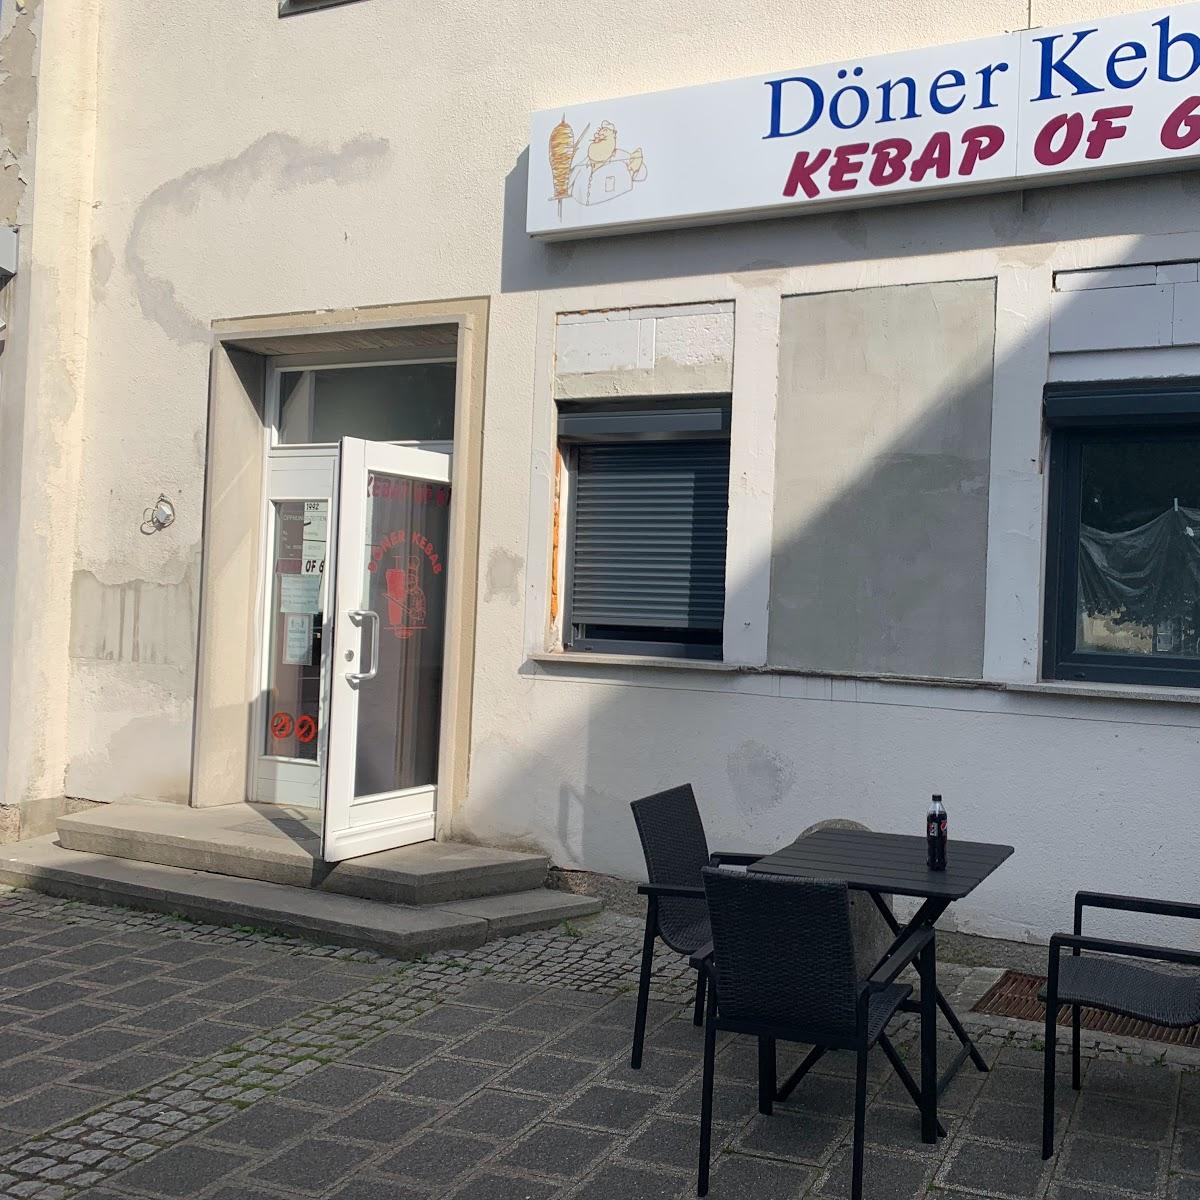 Restaurant "Kebap of 61" in Sonnefeld